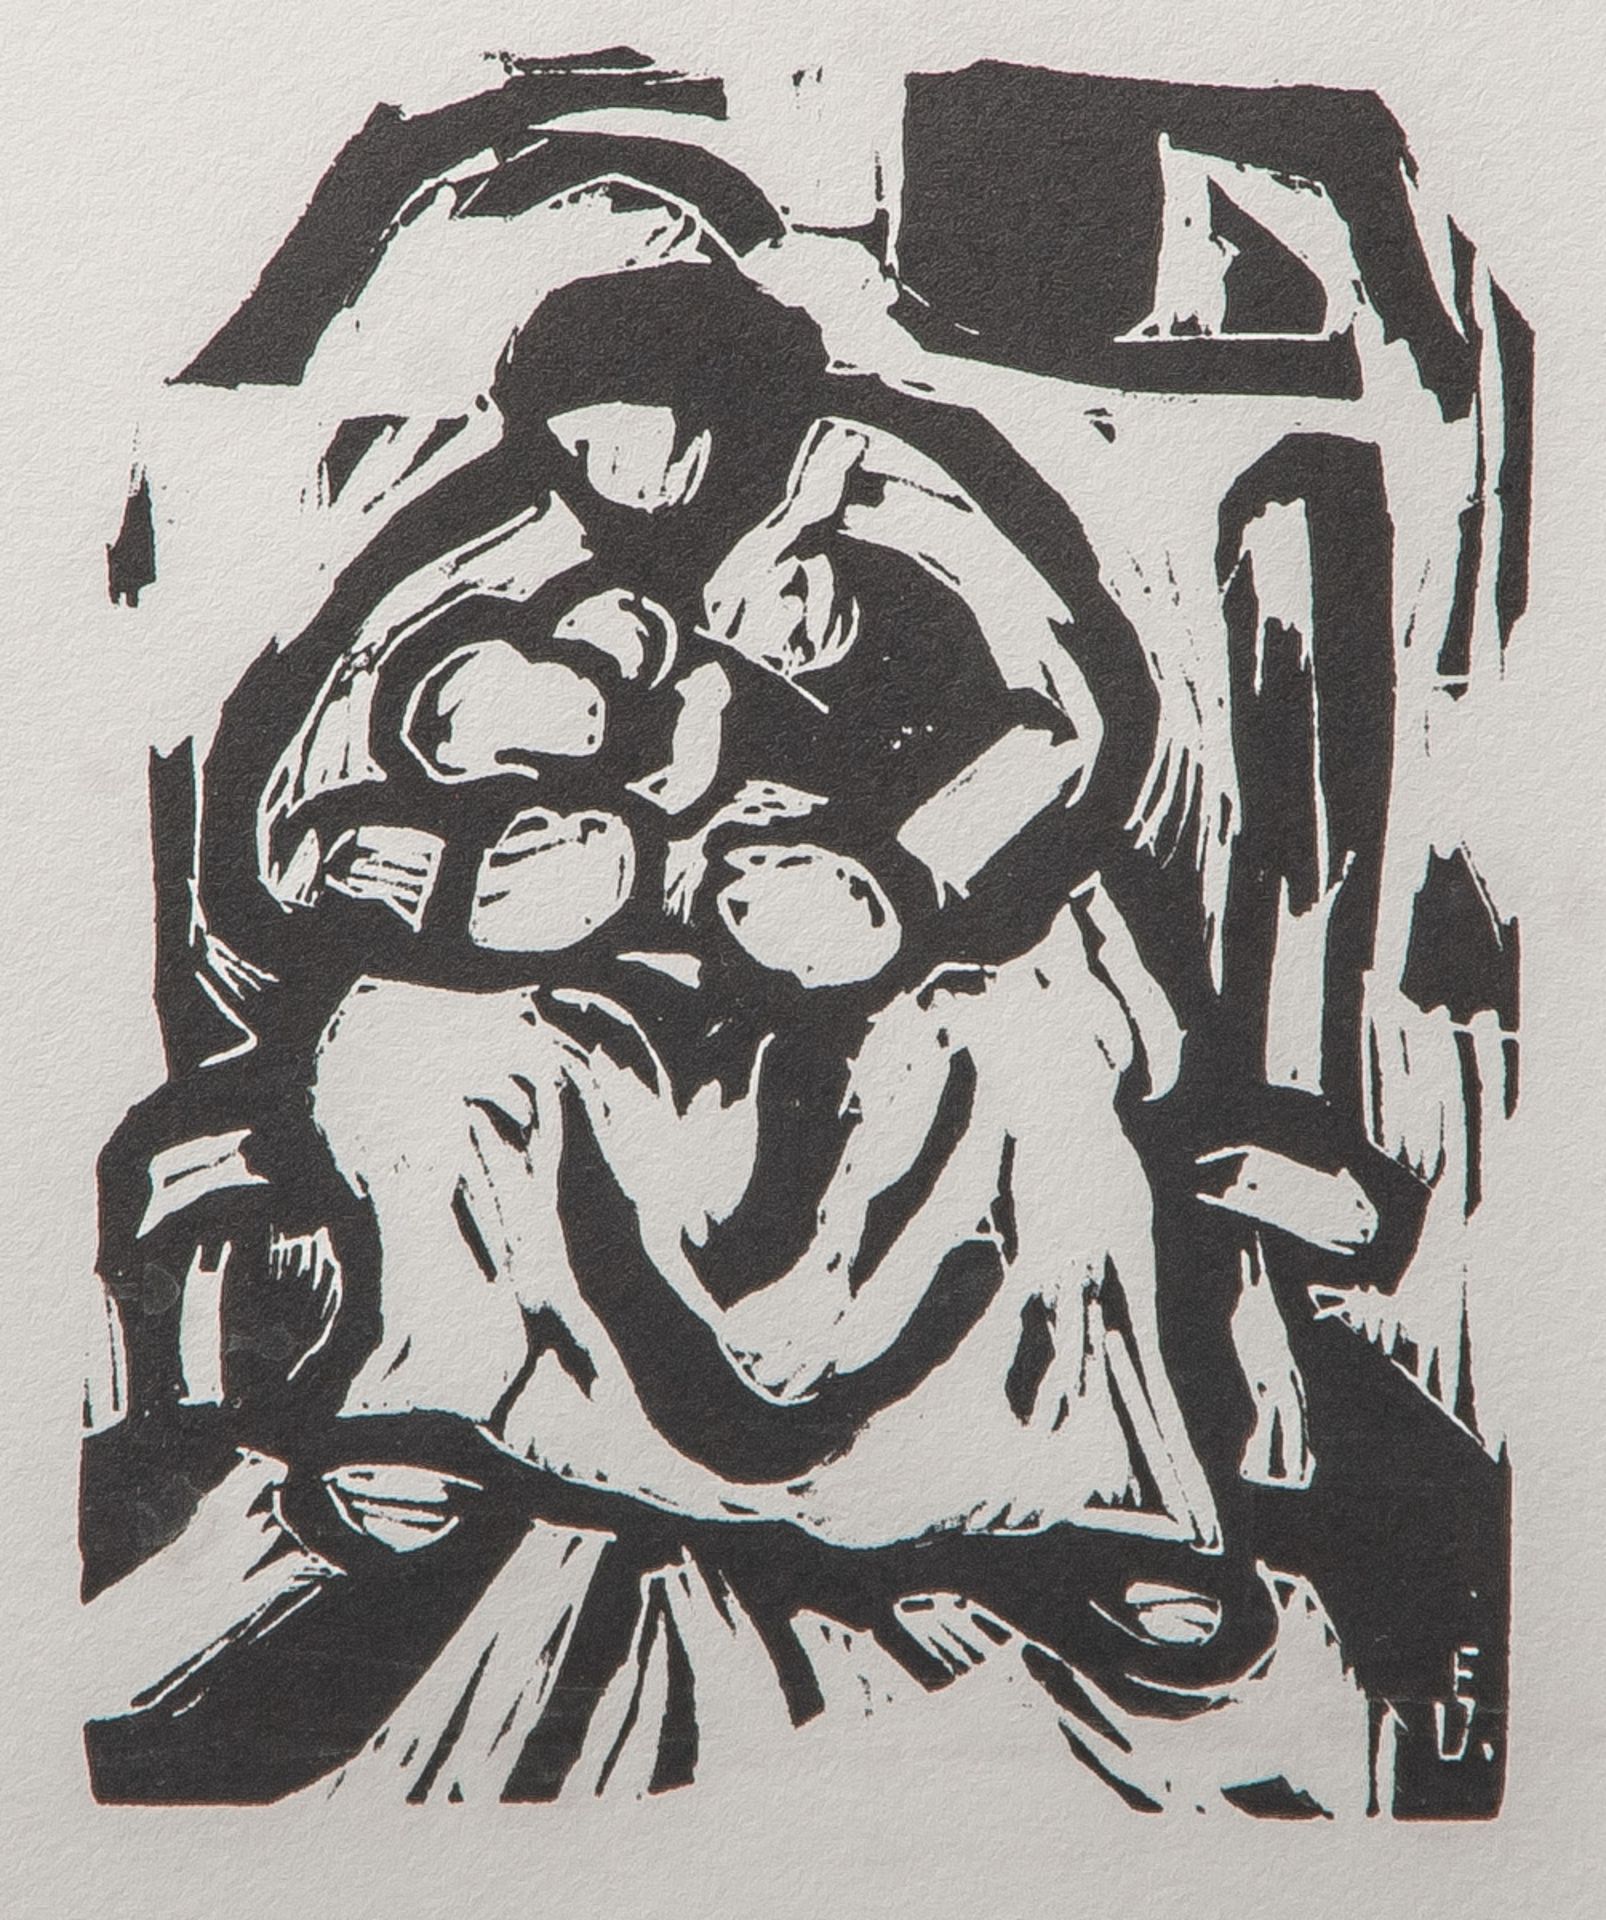 Viegener, Eberhard (1890-1967), "Mutter und Kind", Holzschnitt/Büttenpapier, re u. in derPlatte